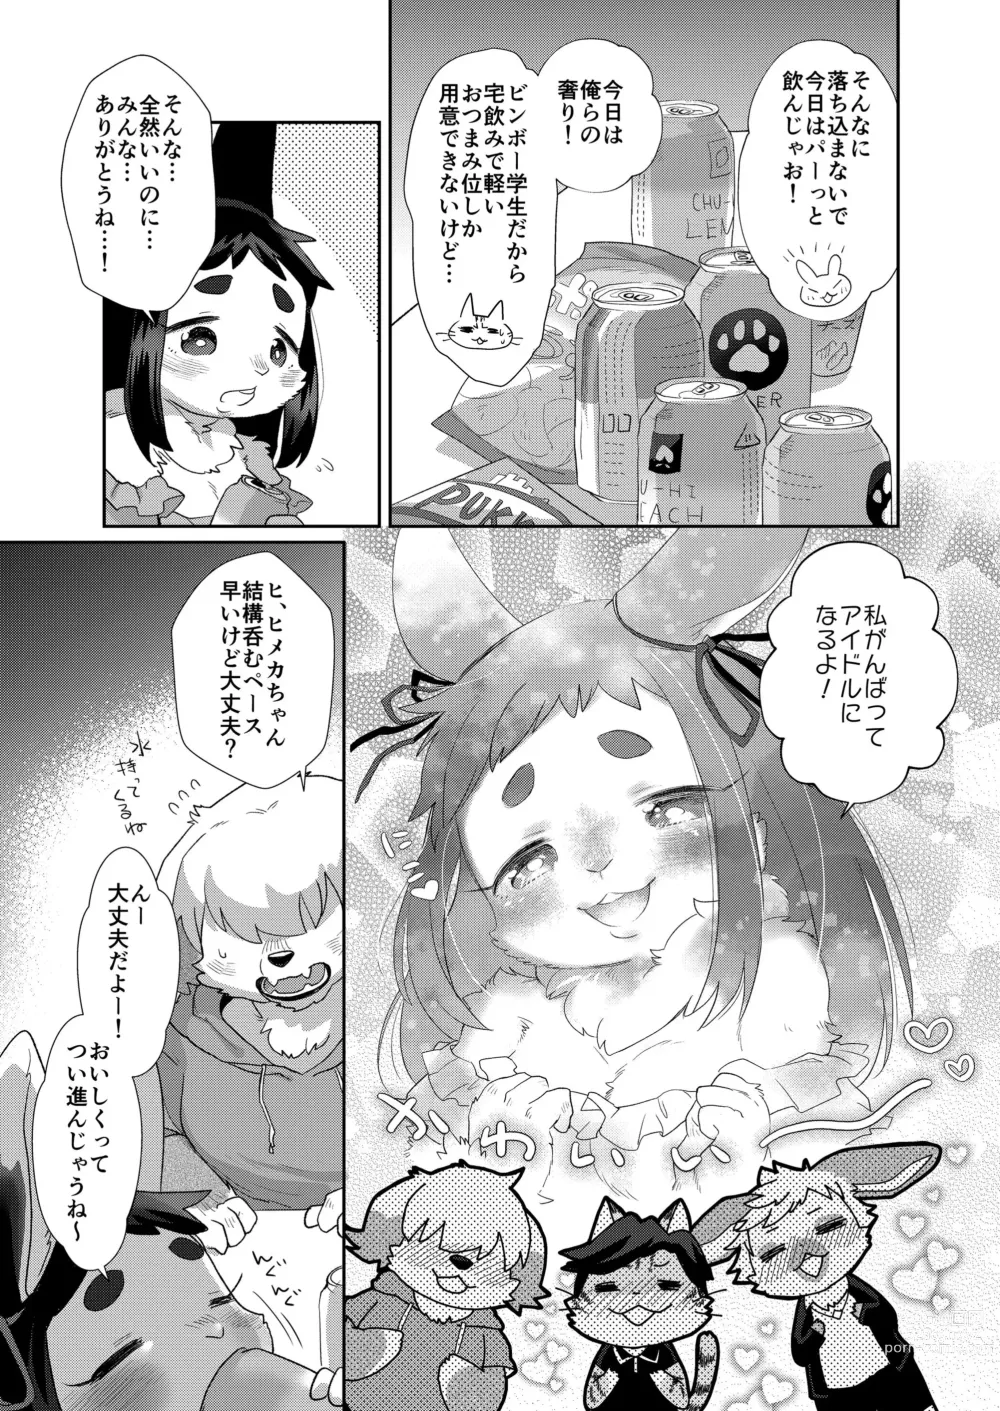 Page 9 of manga Kemo Love Banashi